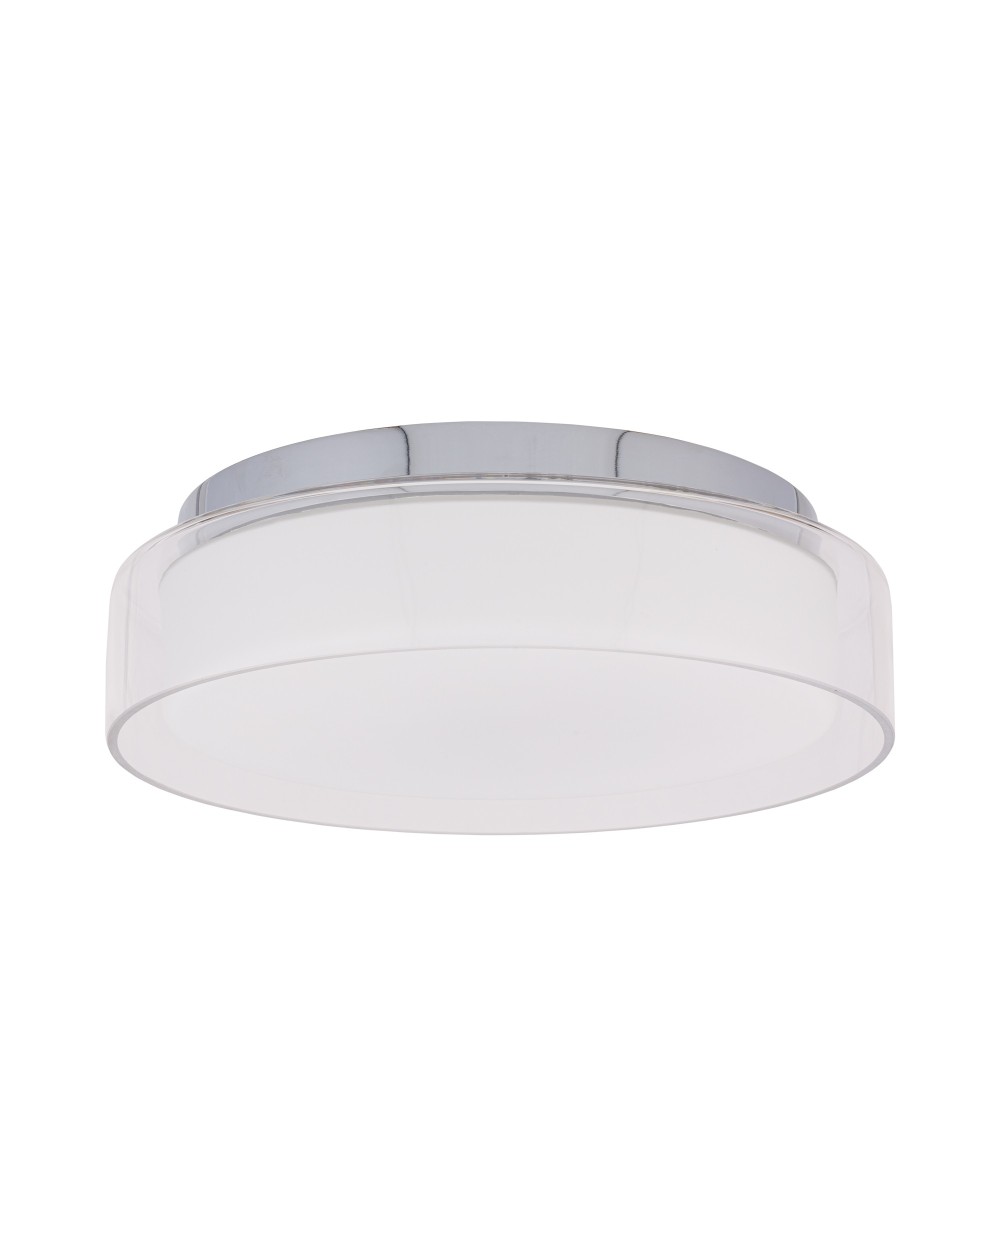 Lampa sufitowa, plafon PAN LED S - Nowodvorski Oświetlenie wewnętrzne